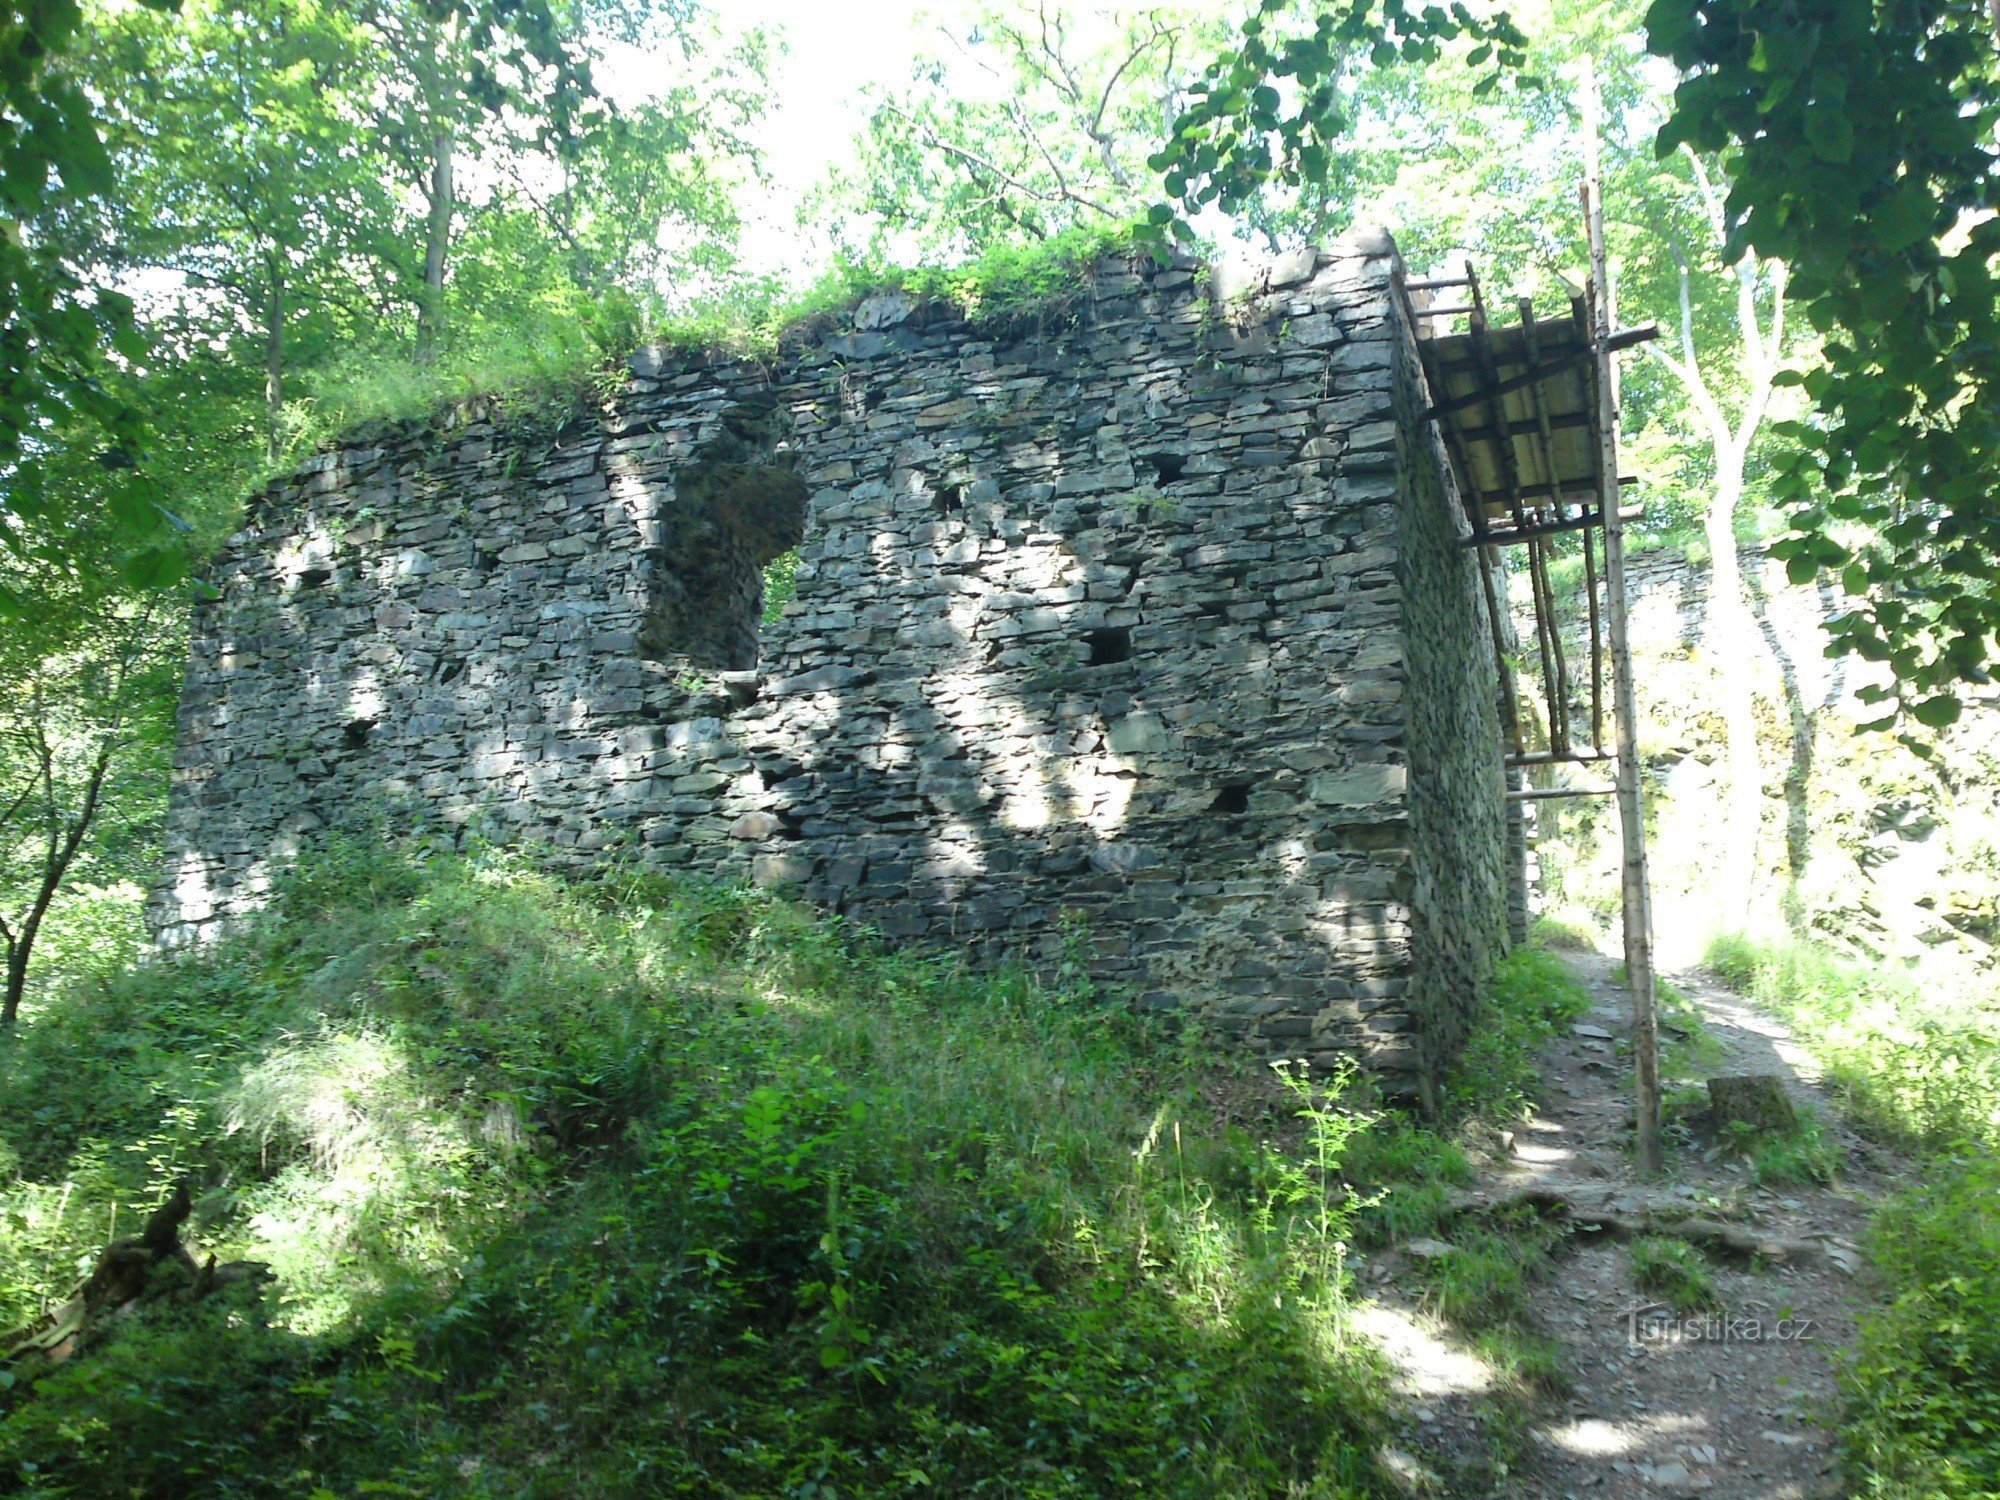 Jenčov Castle